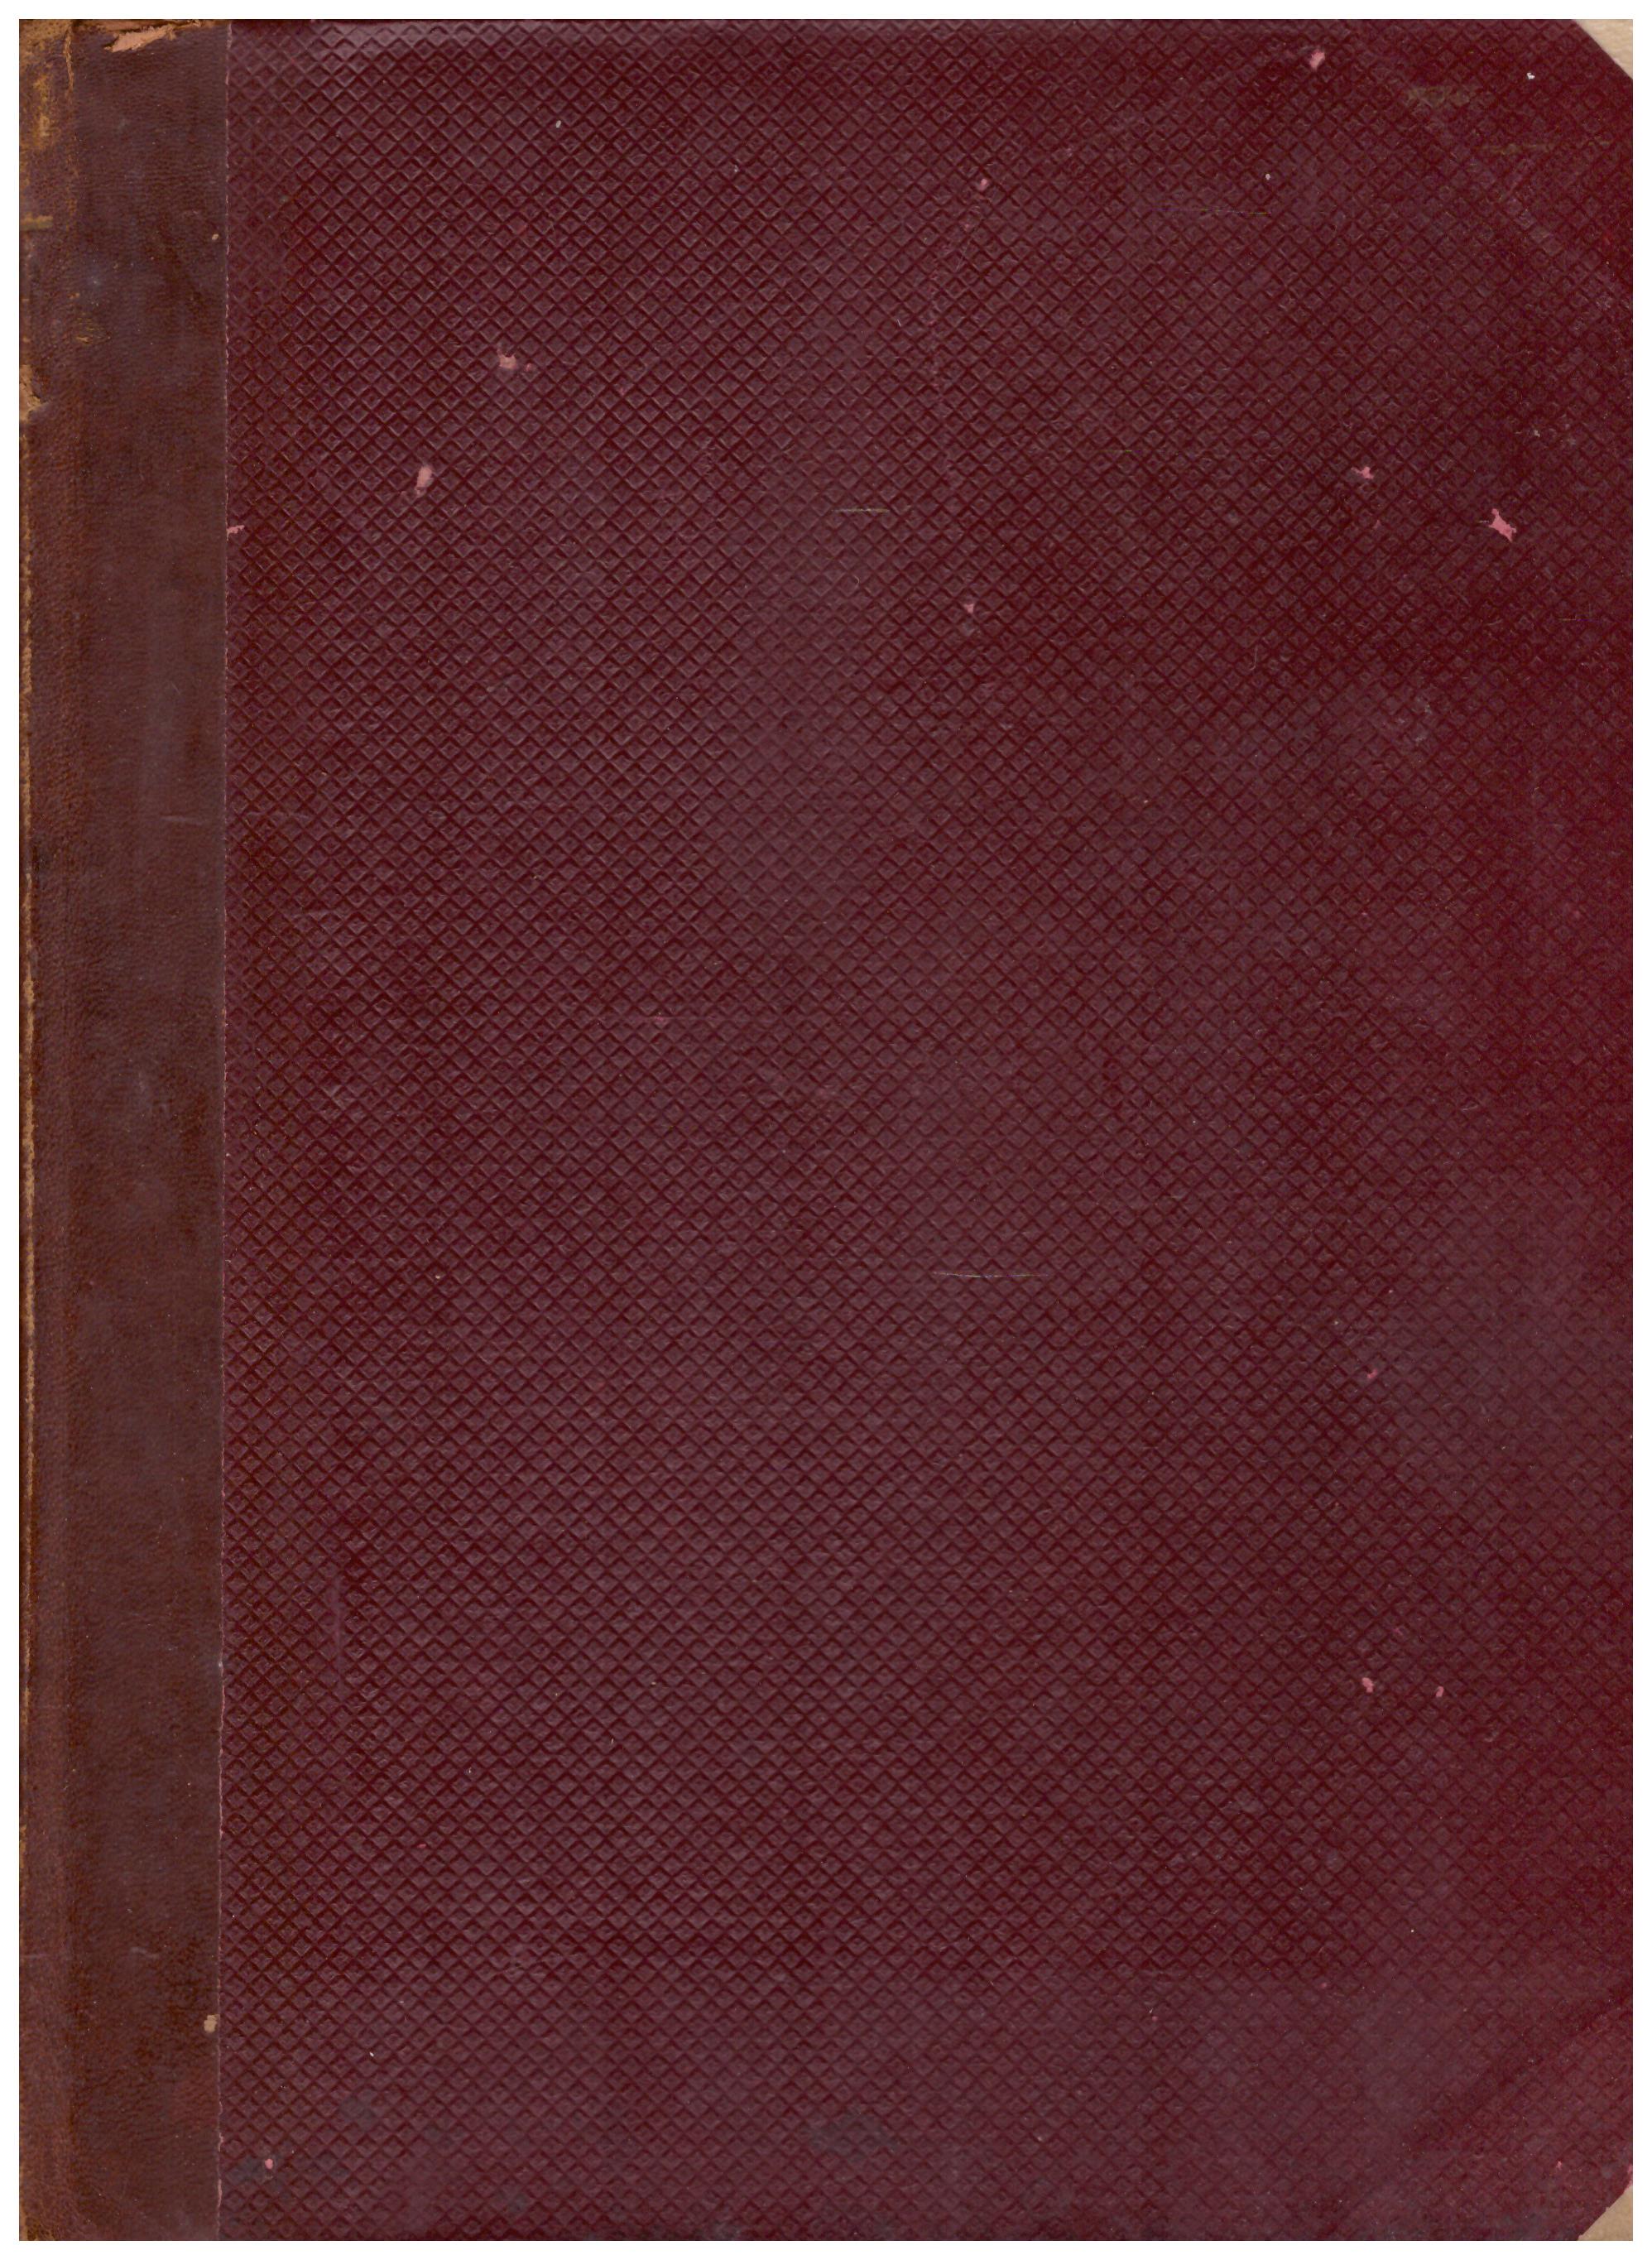 Titolo: Firenze dai Medici ai Lorena Autore : Giuseppe Conti Editore: R. Bomporad e figlio, 1909